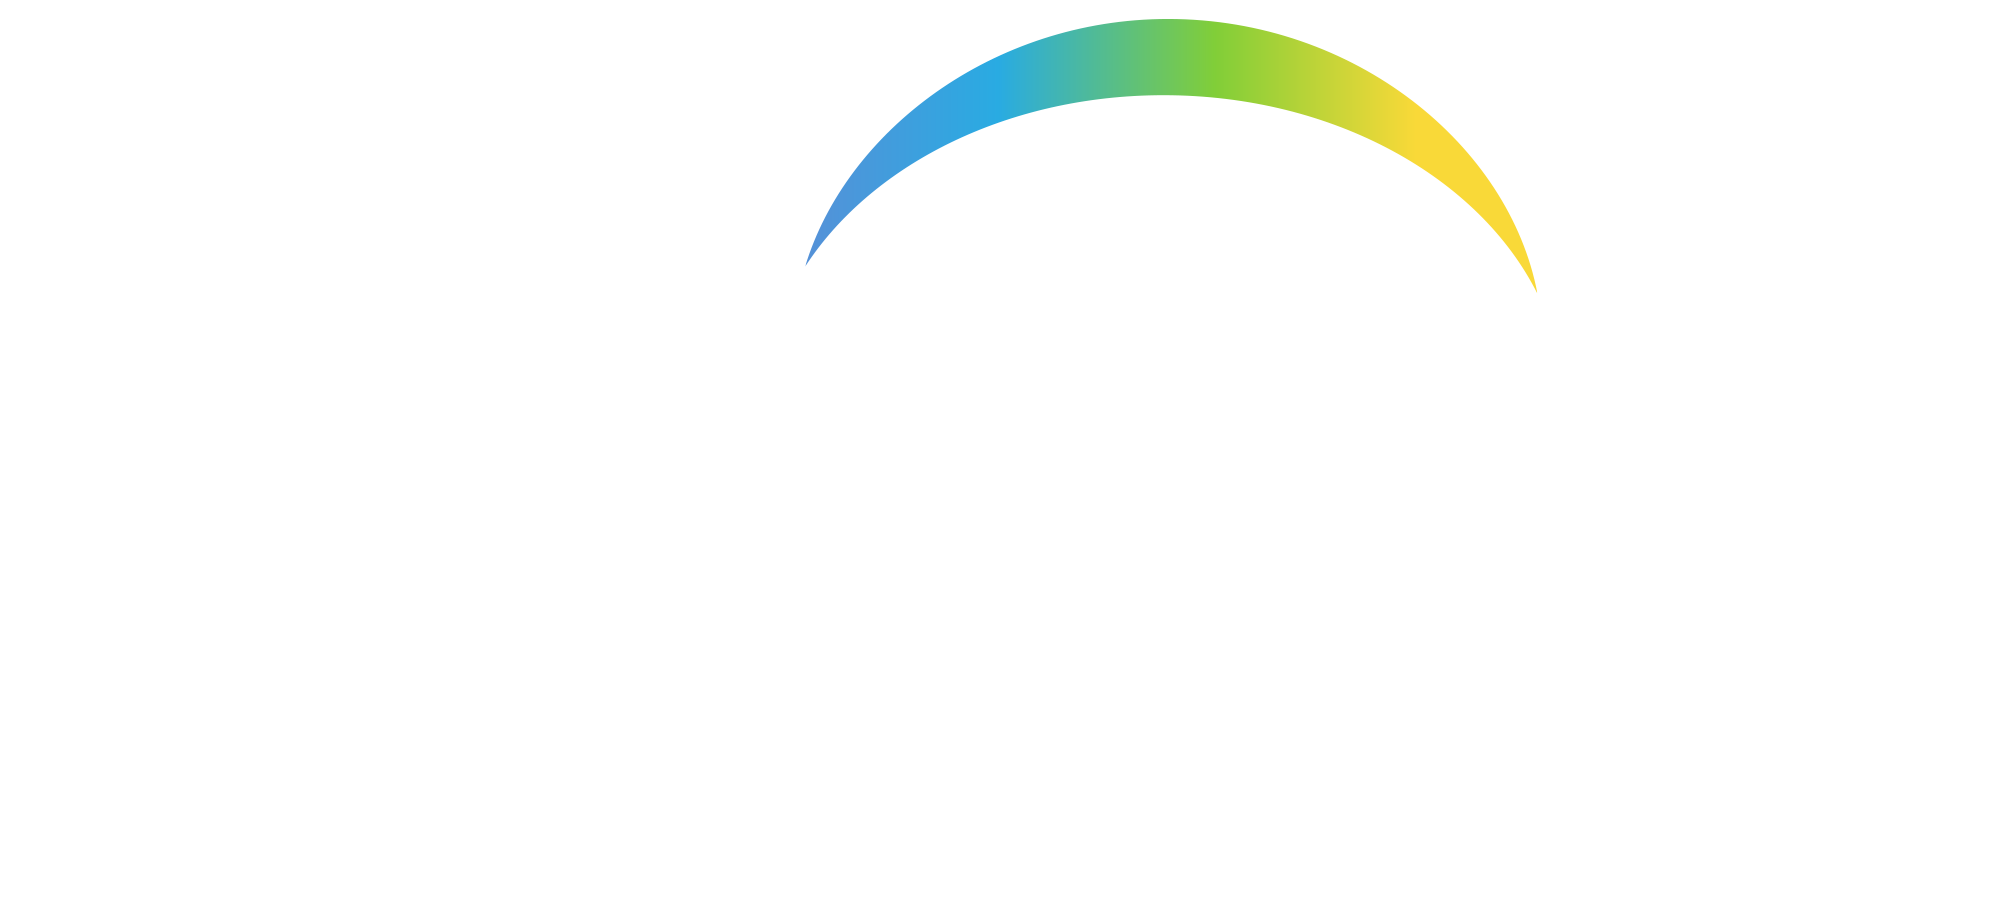 CriSys